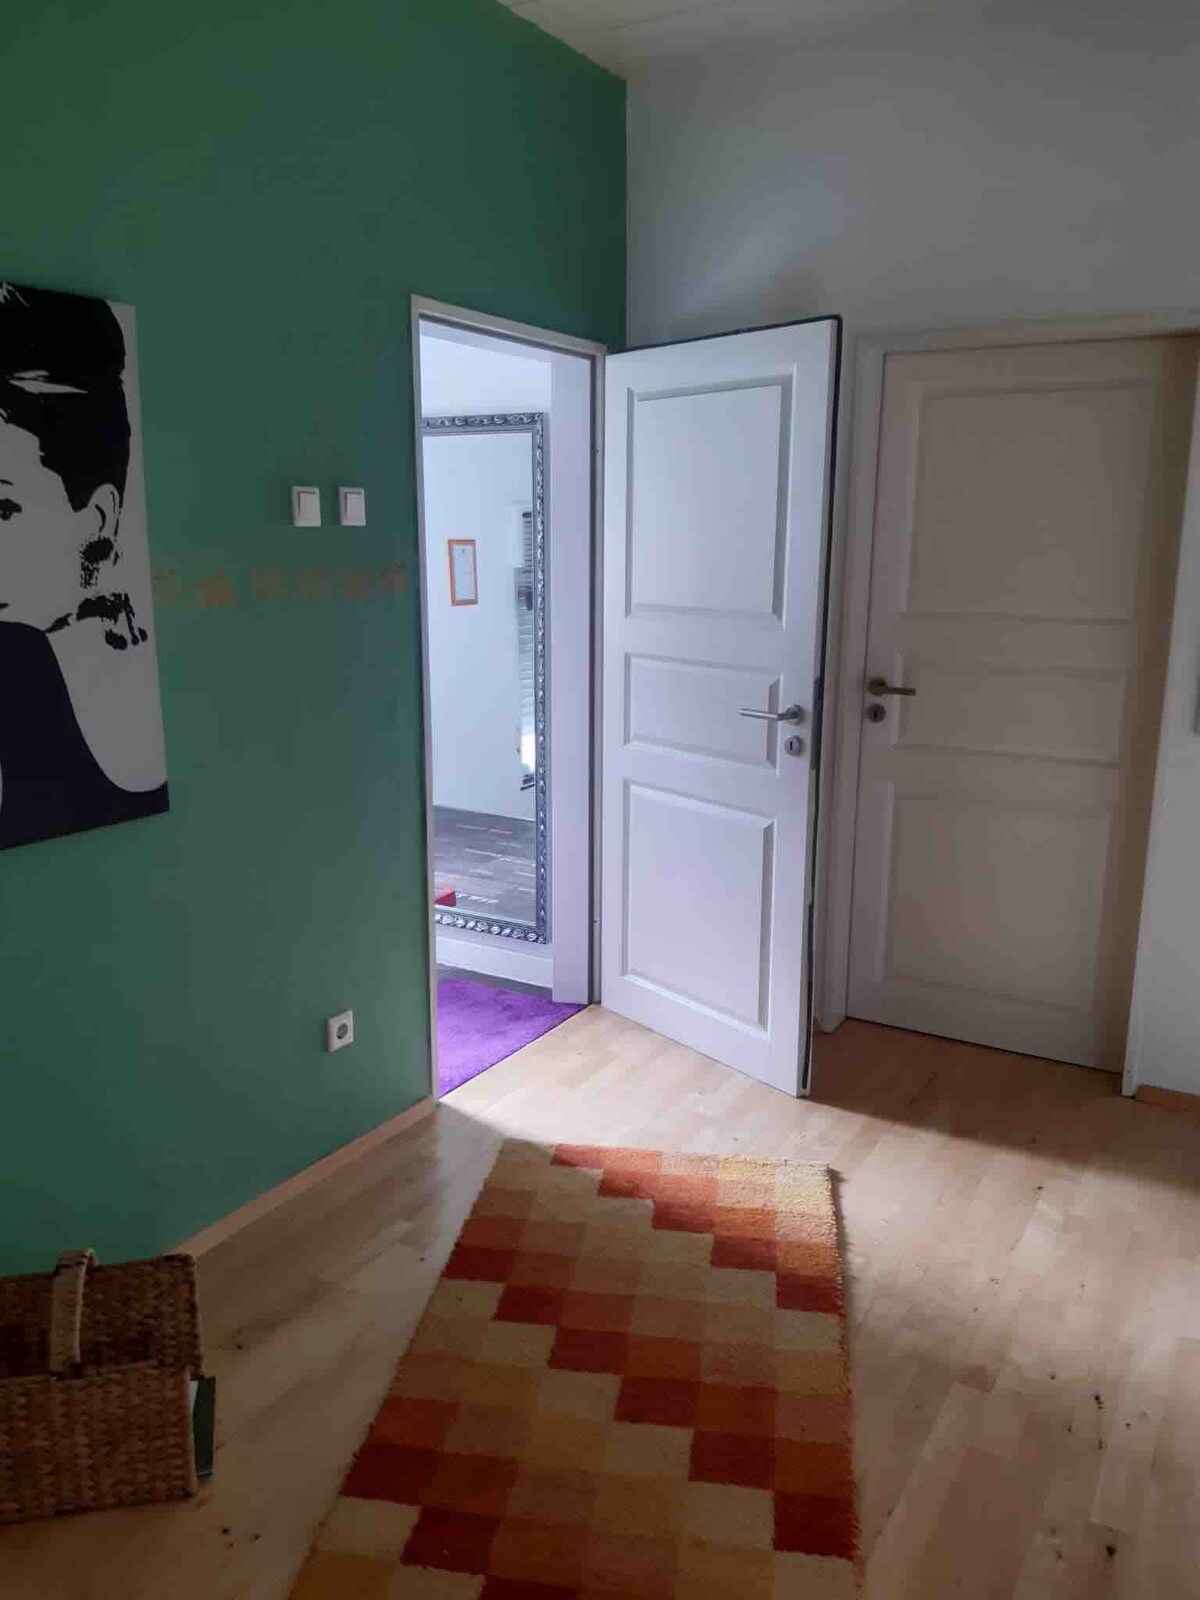 1 Zimmer Apartment in Neheim